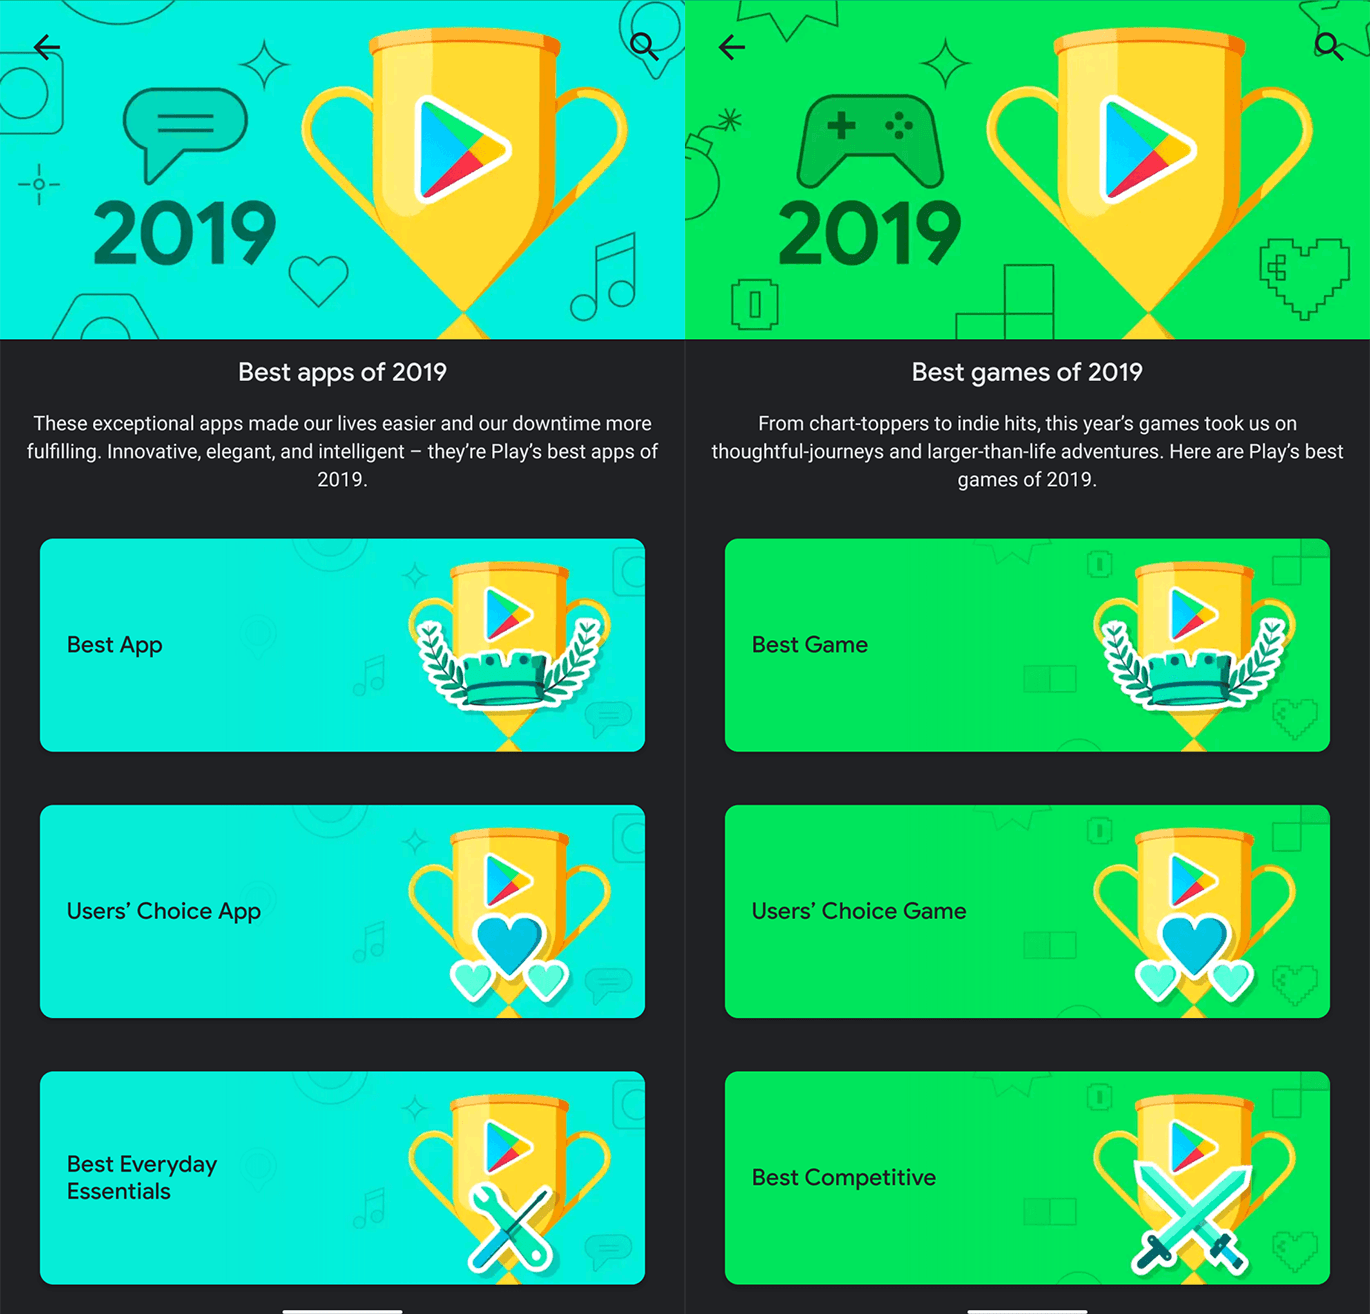 Best of 2019 najlepsze aplikacje i gry mobilne na Androida w 2019 roku